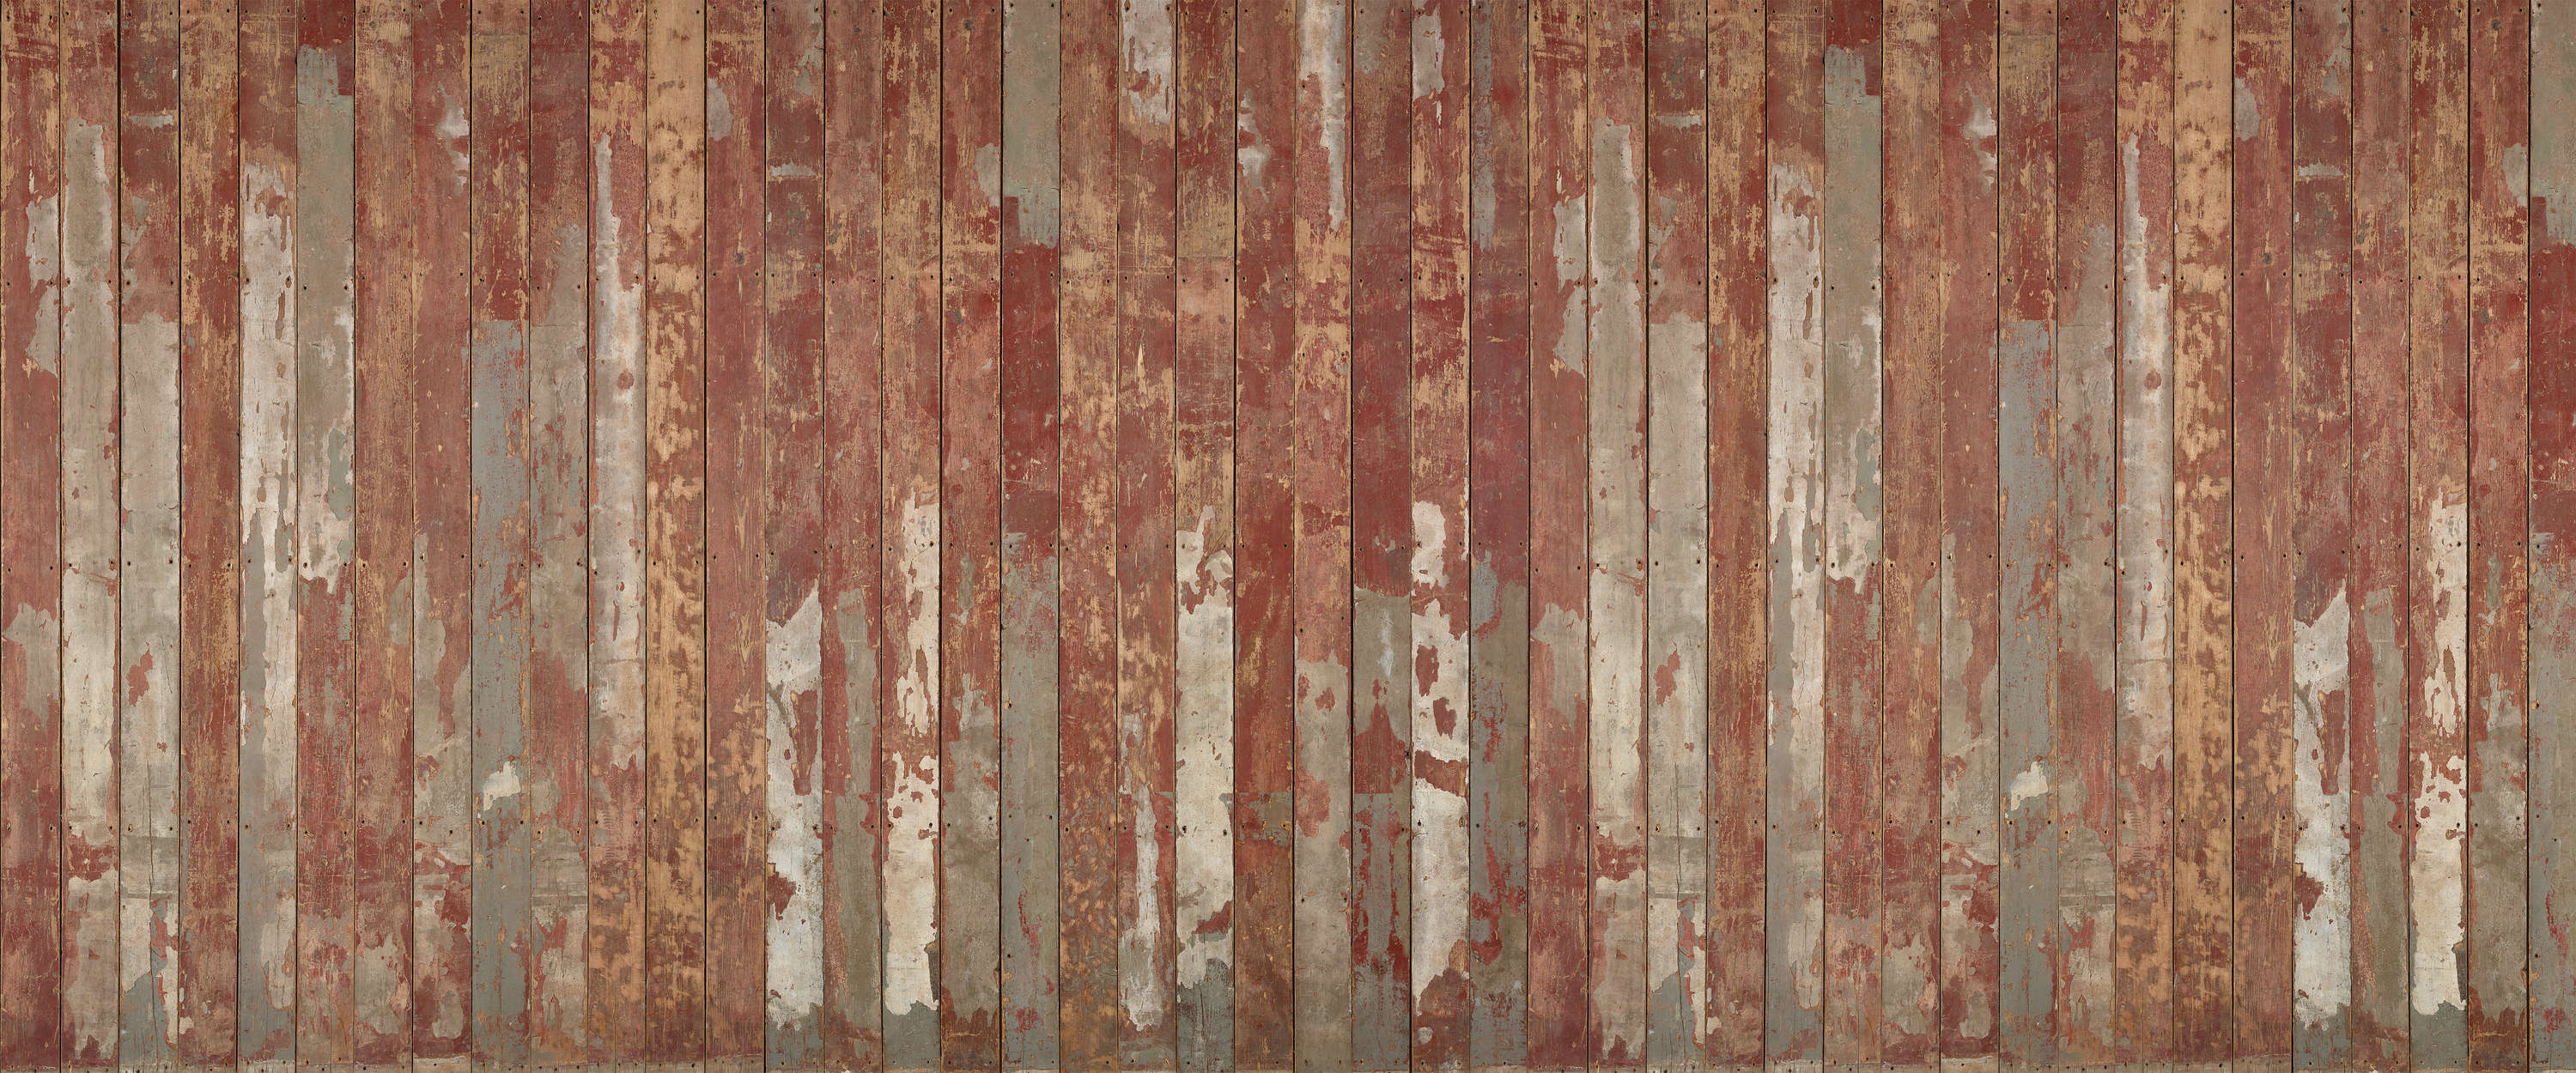             Mural de pared de tablones rústicos con aspecto de madera vintage
        